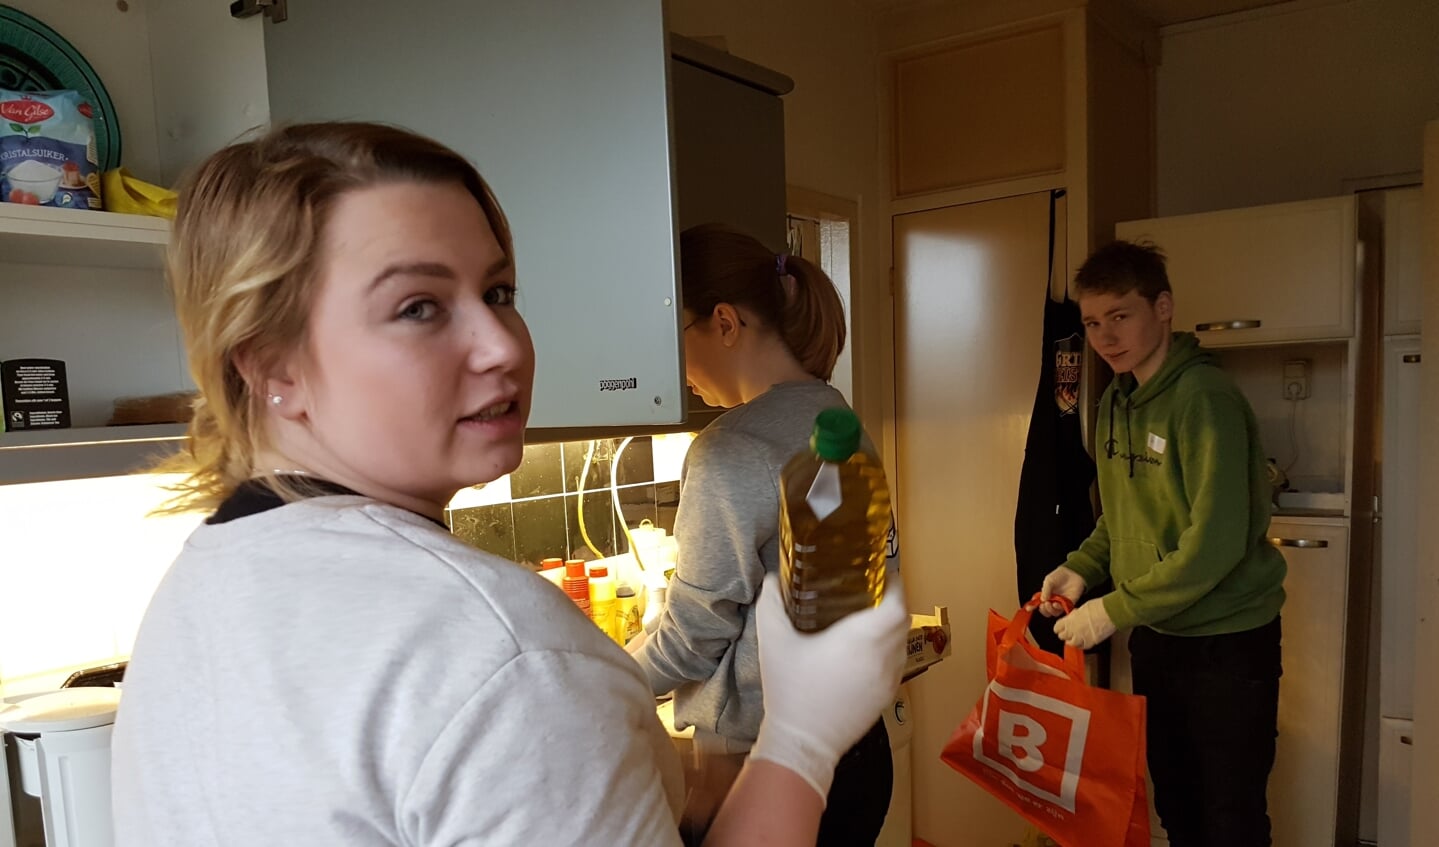 De Graafschapstudenten maken de keuken van een alleenstaande man schoon